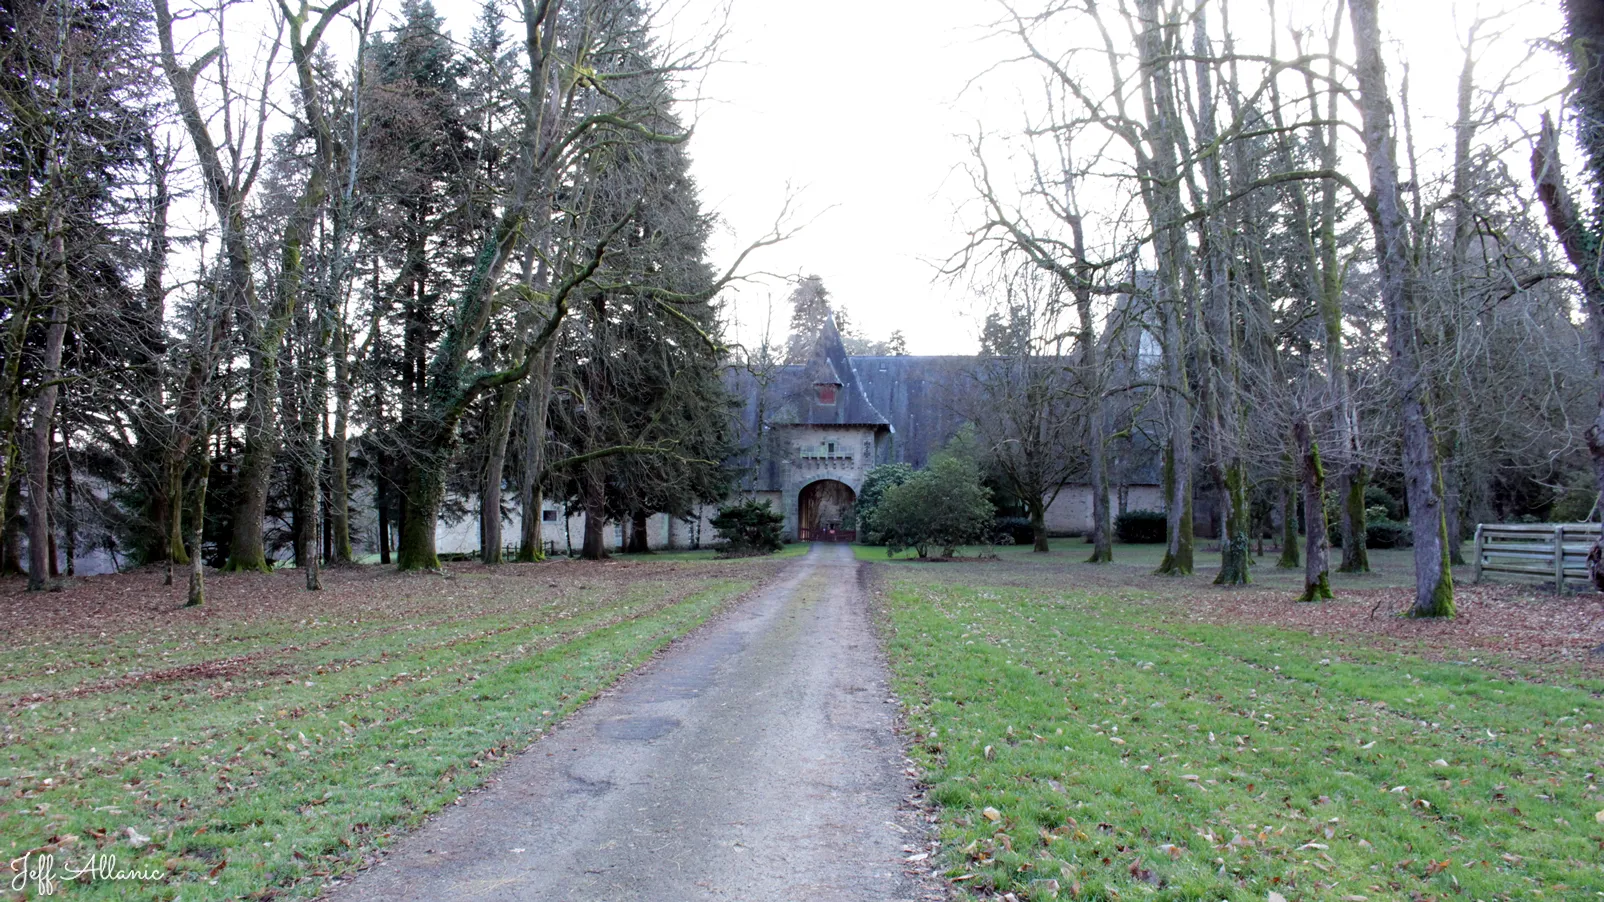 Corrèze découverte - Photo N° 1 - Le château de La farge - 19370 - Chamberet - Monuments historiques - Quelques pas - Autour de vous